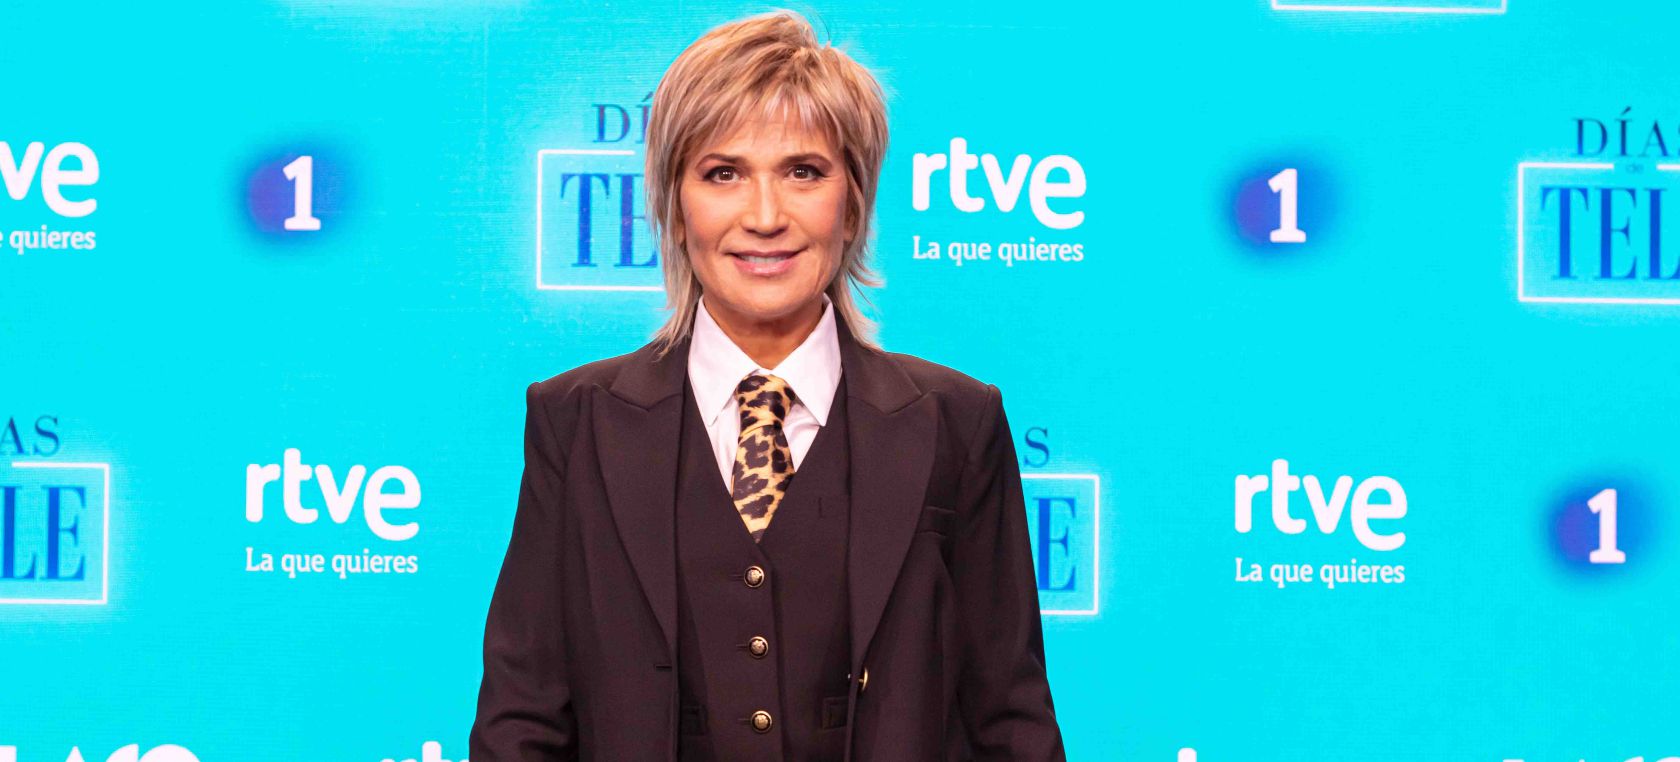 Así será el programa que unirá a Julia Otero y Carolina Iglesias en TVE, 'Días de tele'